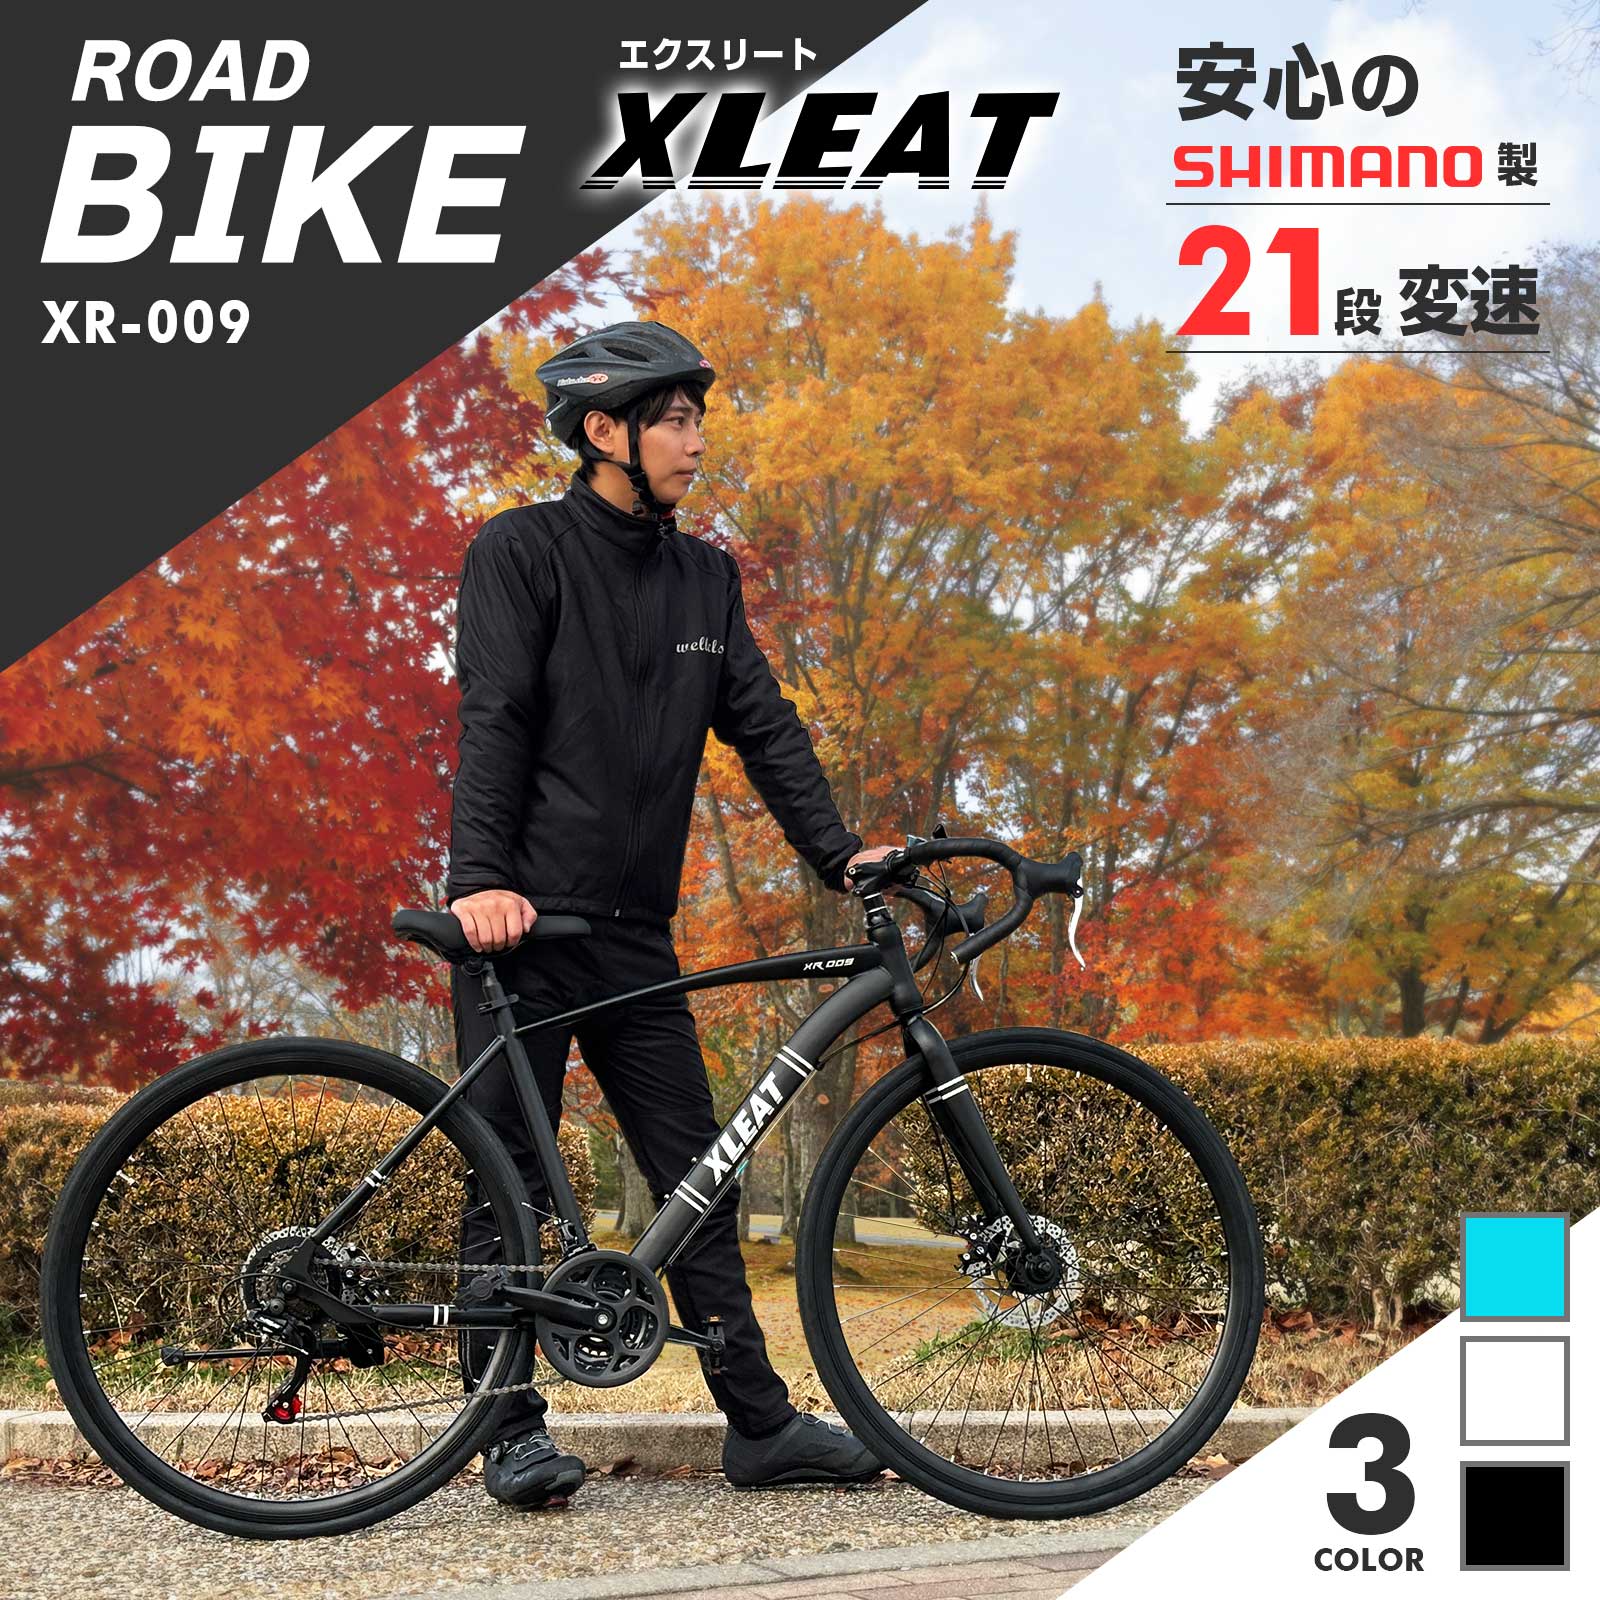 ロードバイク シマノ 初心者 自転車 ライト タイヤ 21段変速 XLEAT-